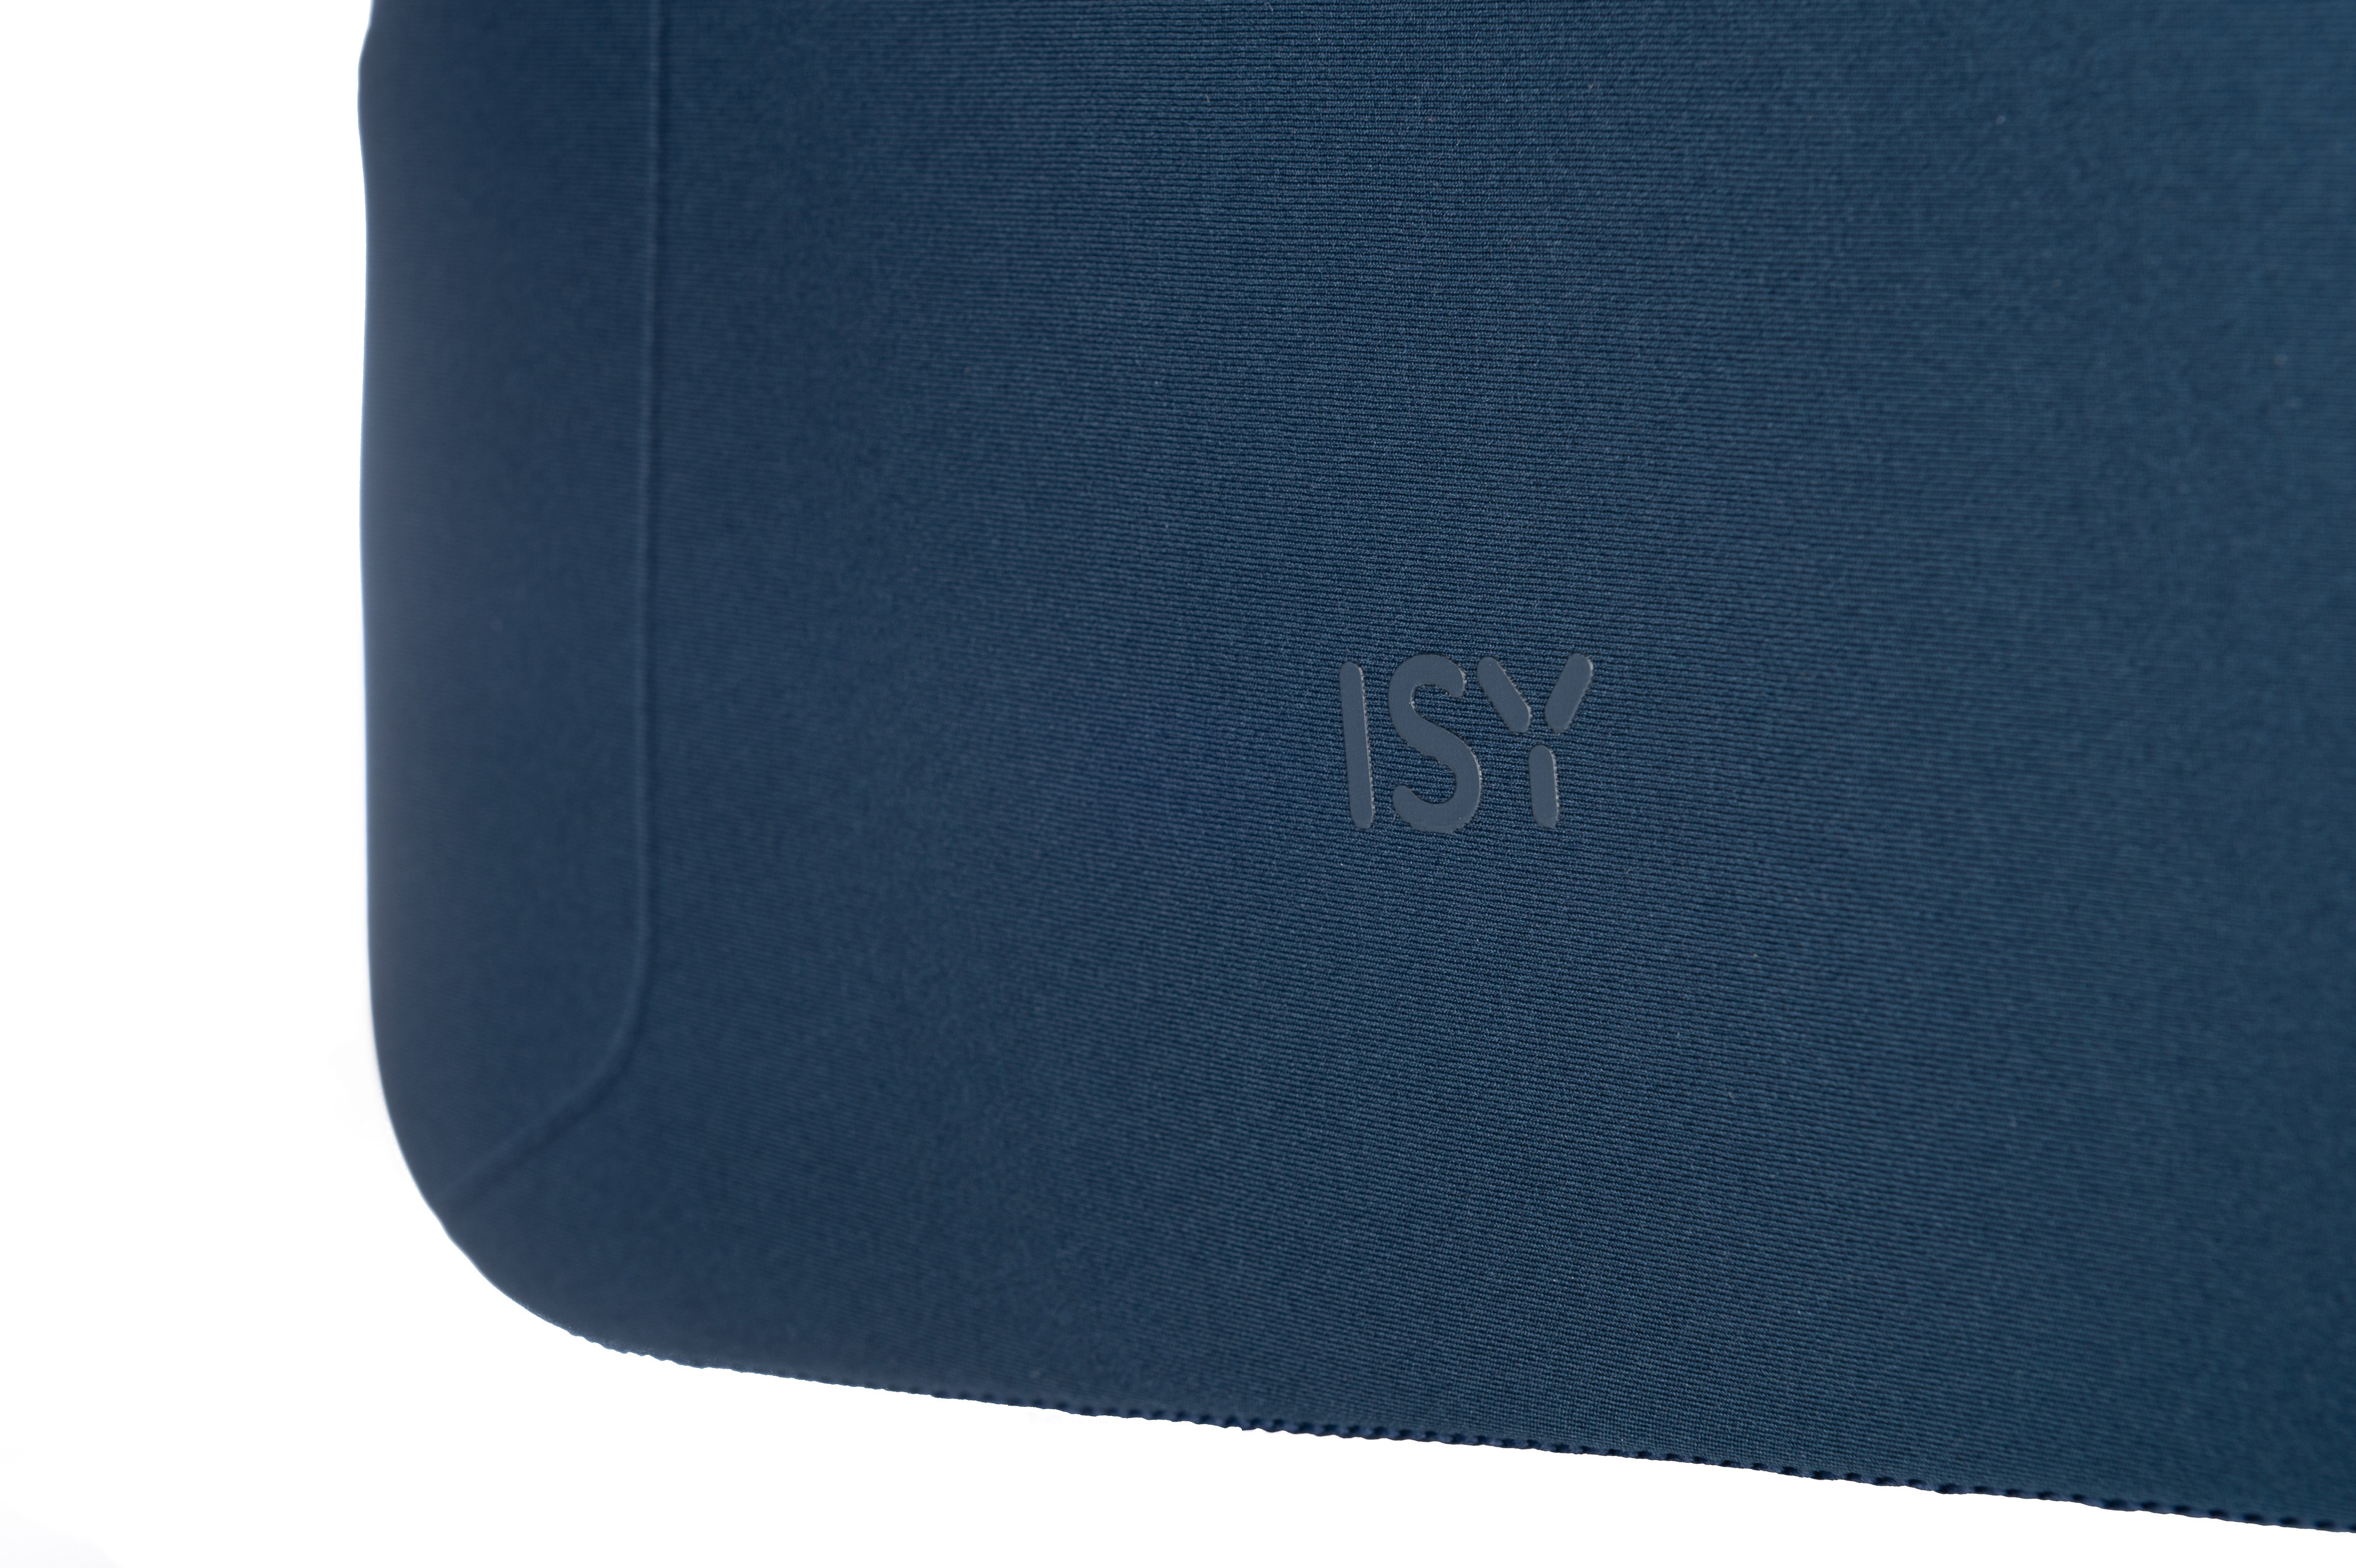 Universal ISY INB-1560 100% Sleeve Polyester, für Blau Notebooktasche